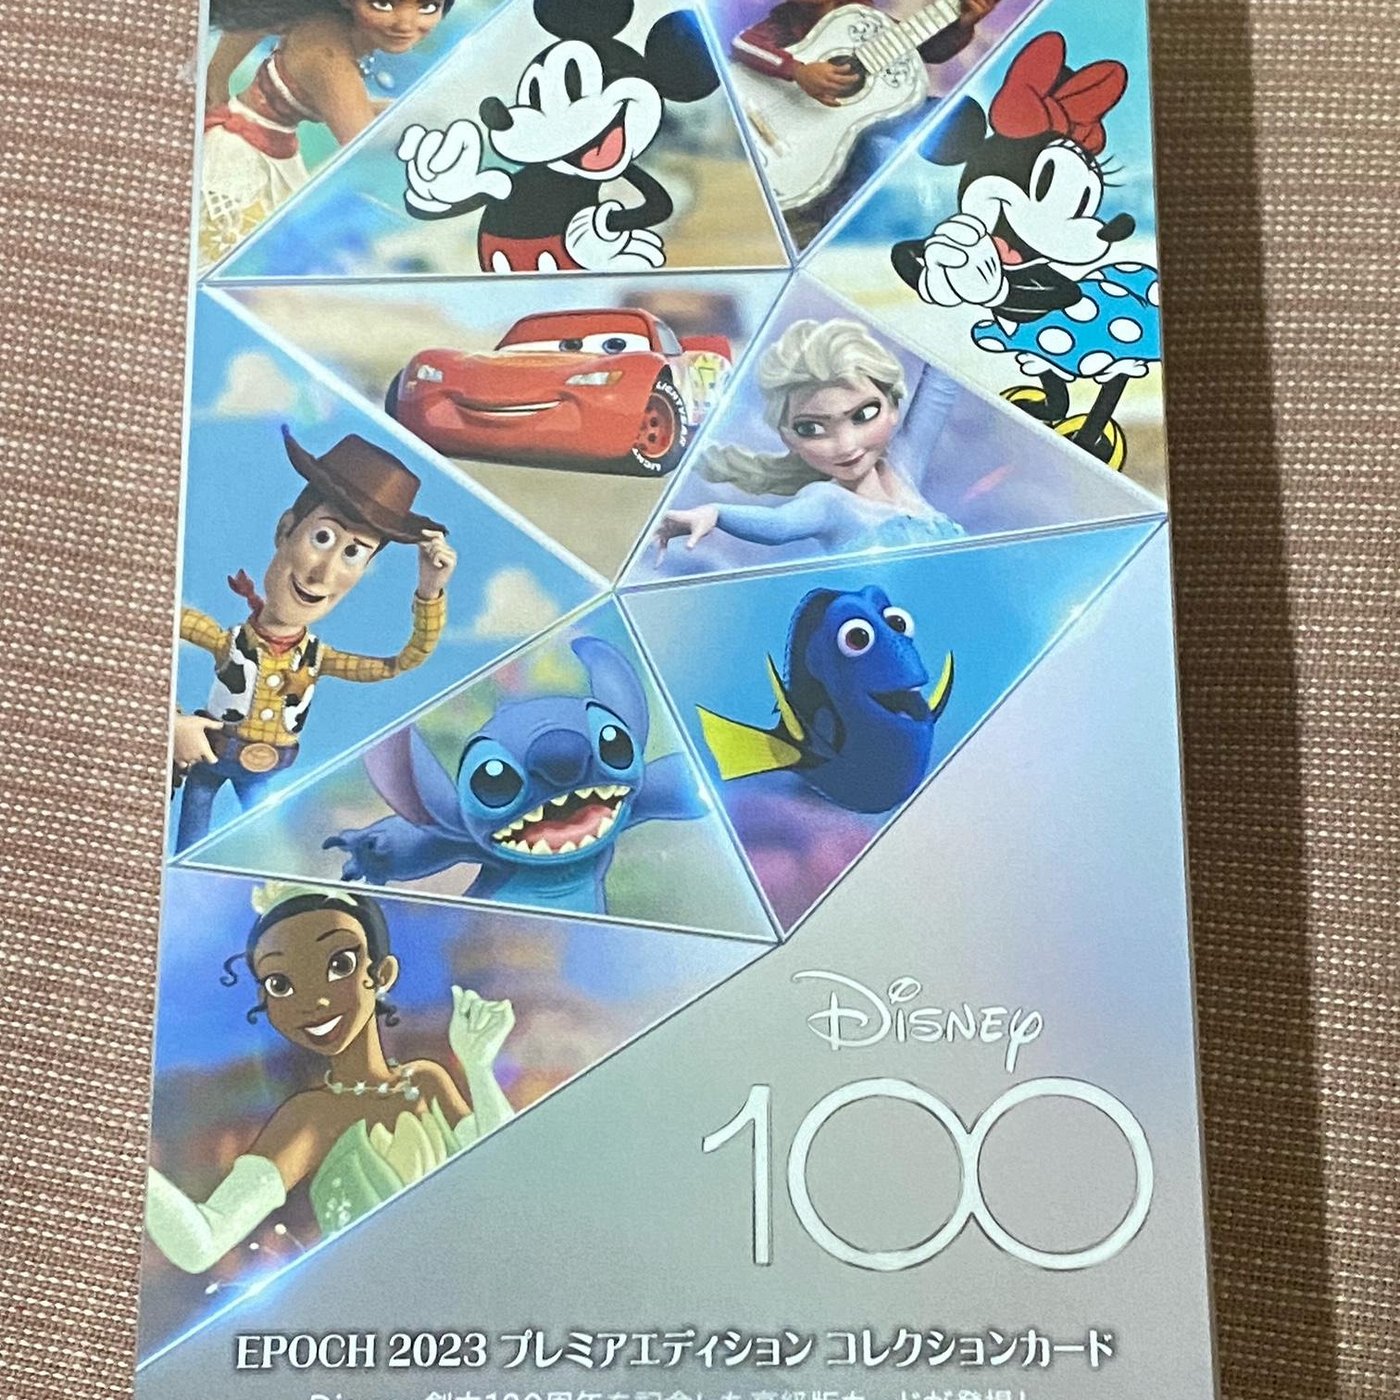 ディズニー100周年 2023 エポック PREMIER EDITION BOX ...